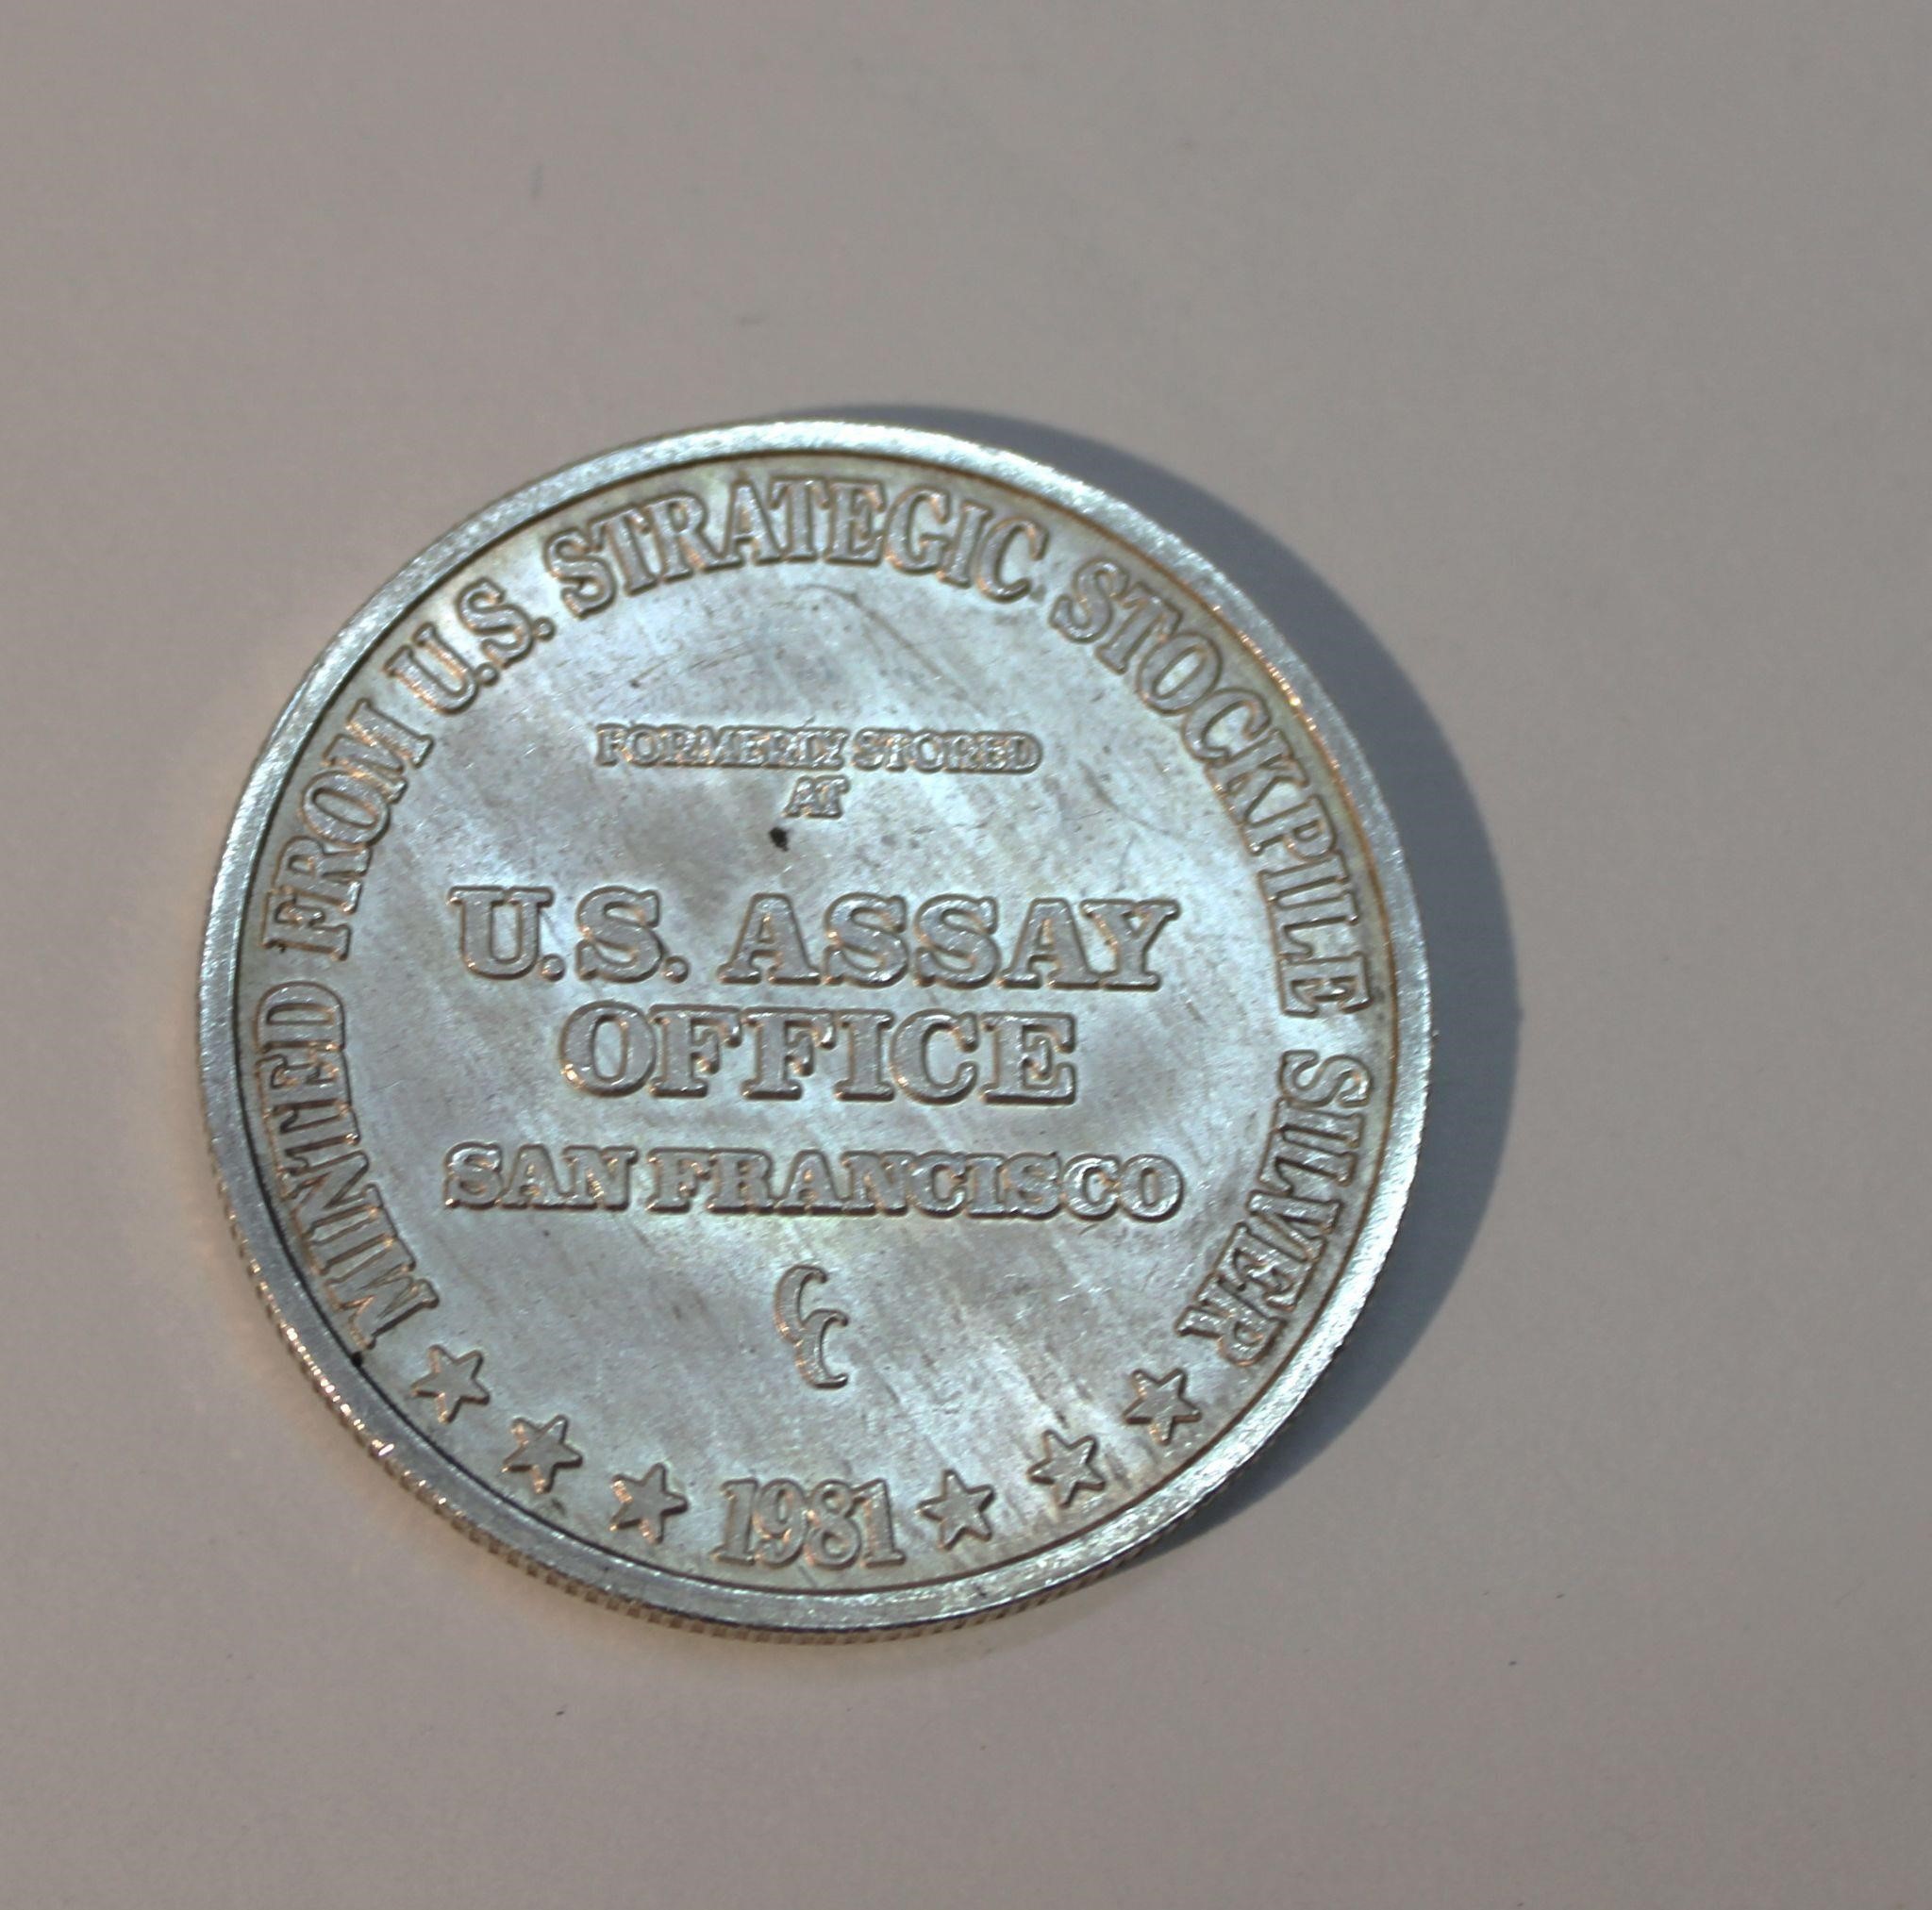 1 oz Silver US Assay Office San Francisco Coin